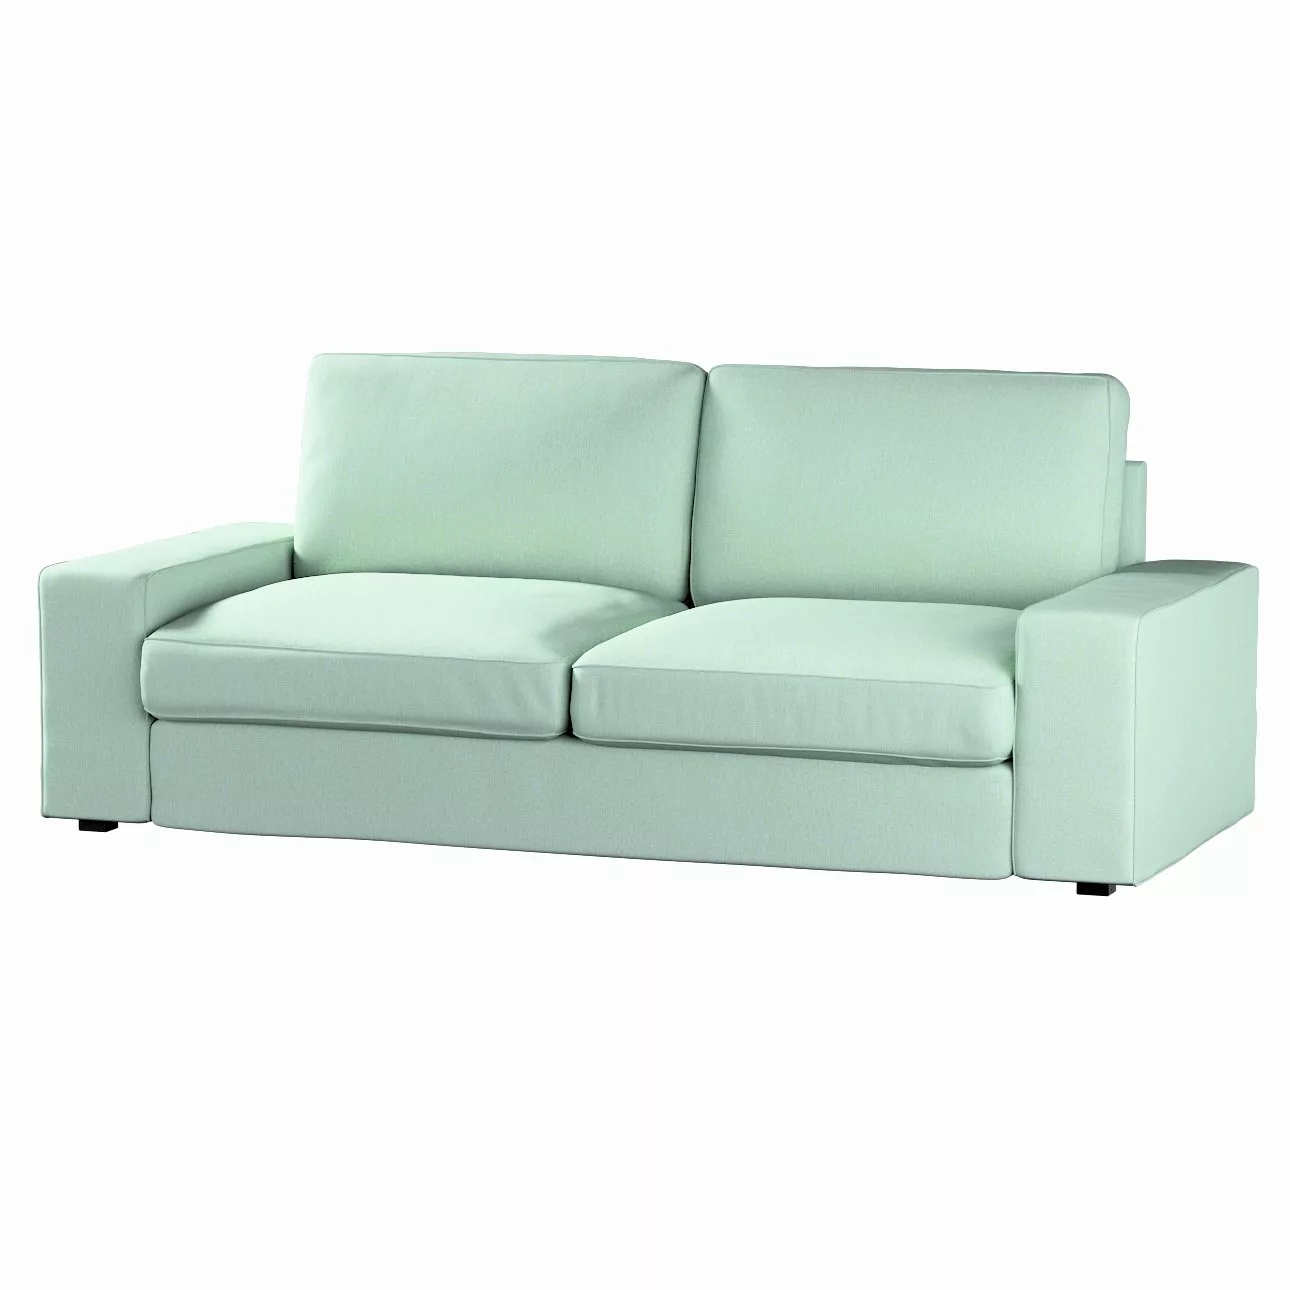 Bezug für Kivik 3-Sitzer Sofa, pastellblau, Bezug für Sofa Kivik 3-Sitzer, günstig online kaufen